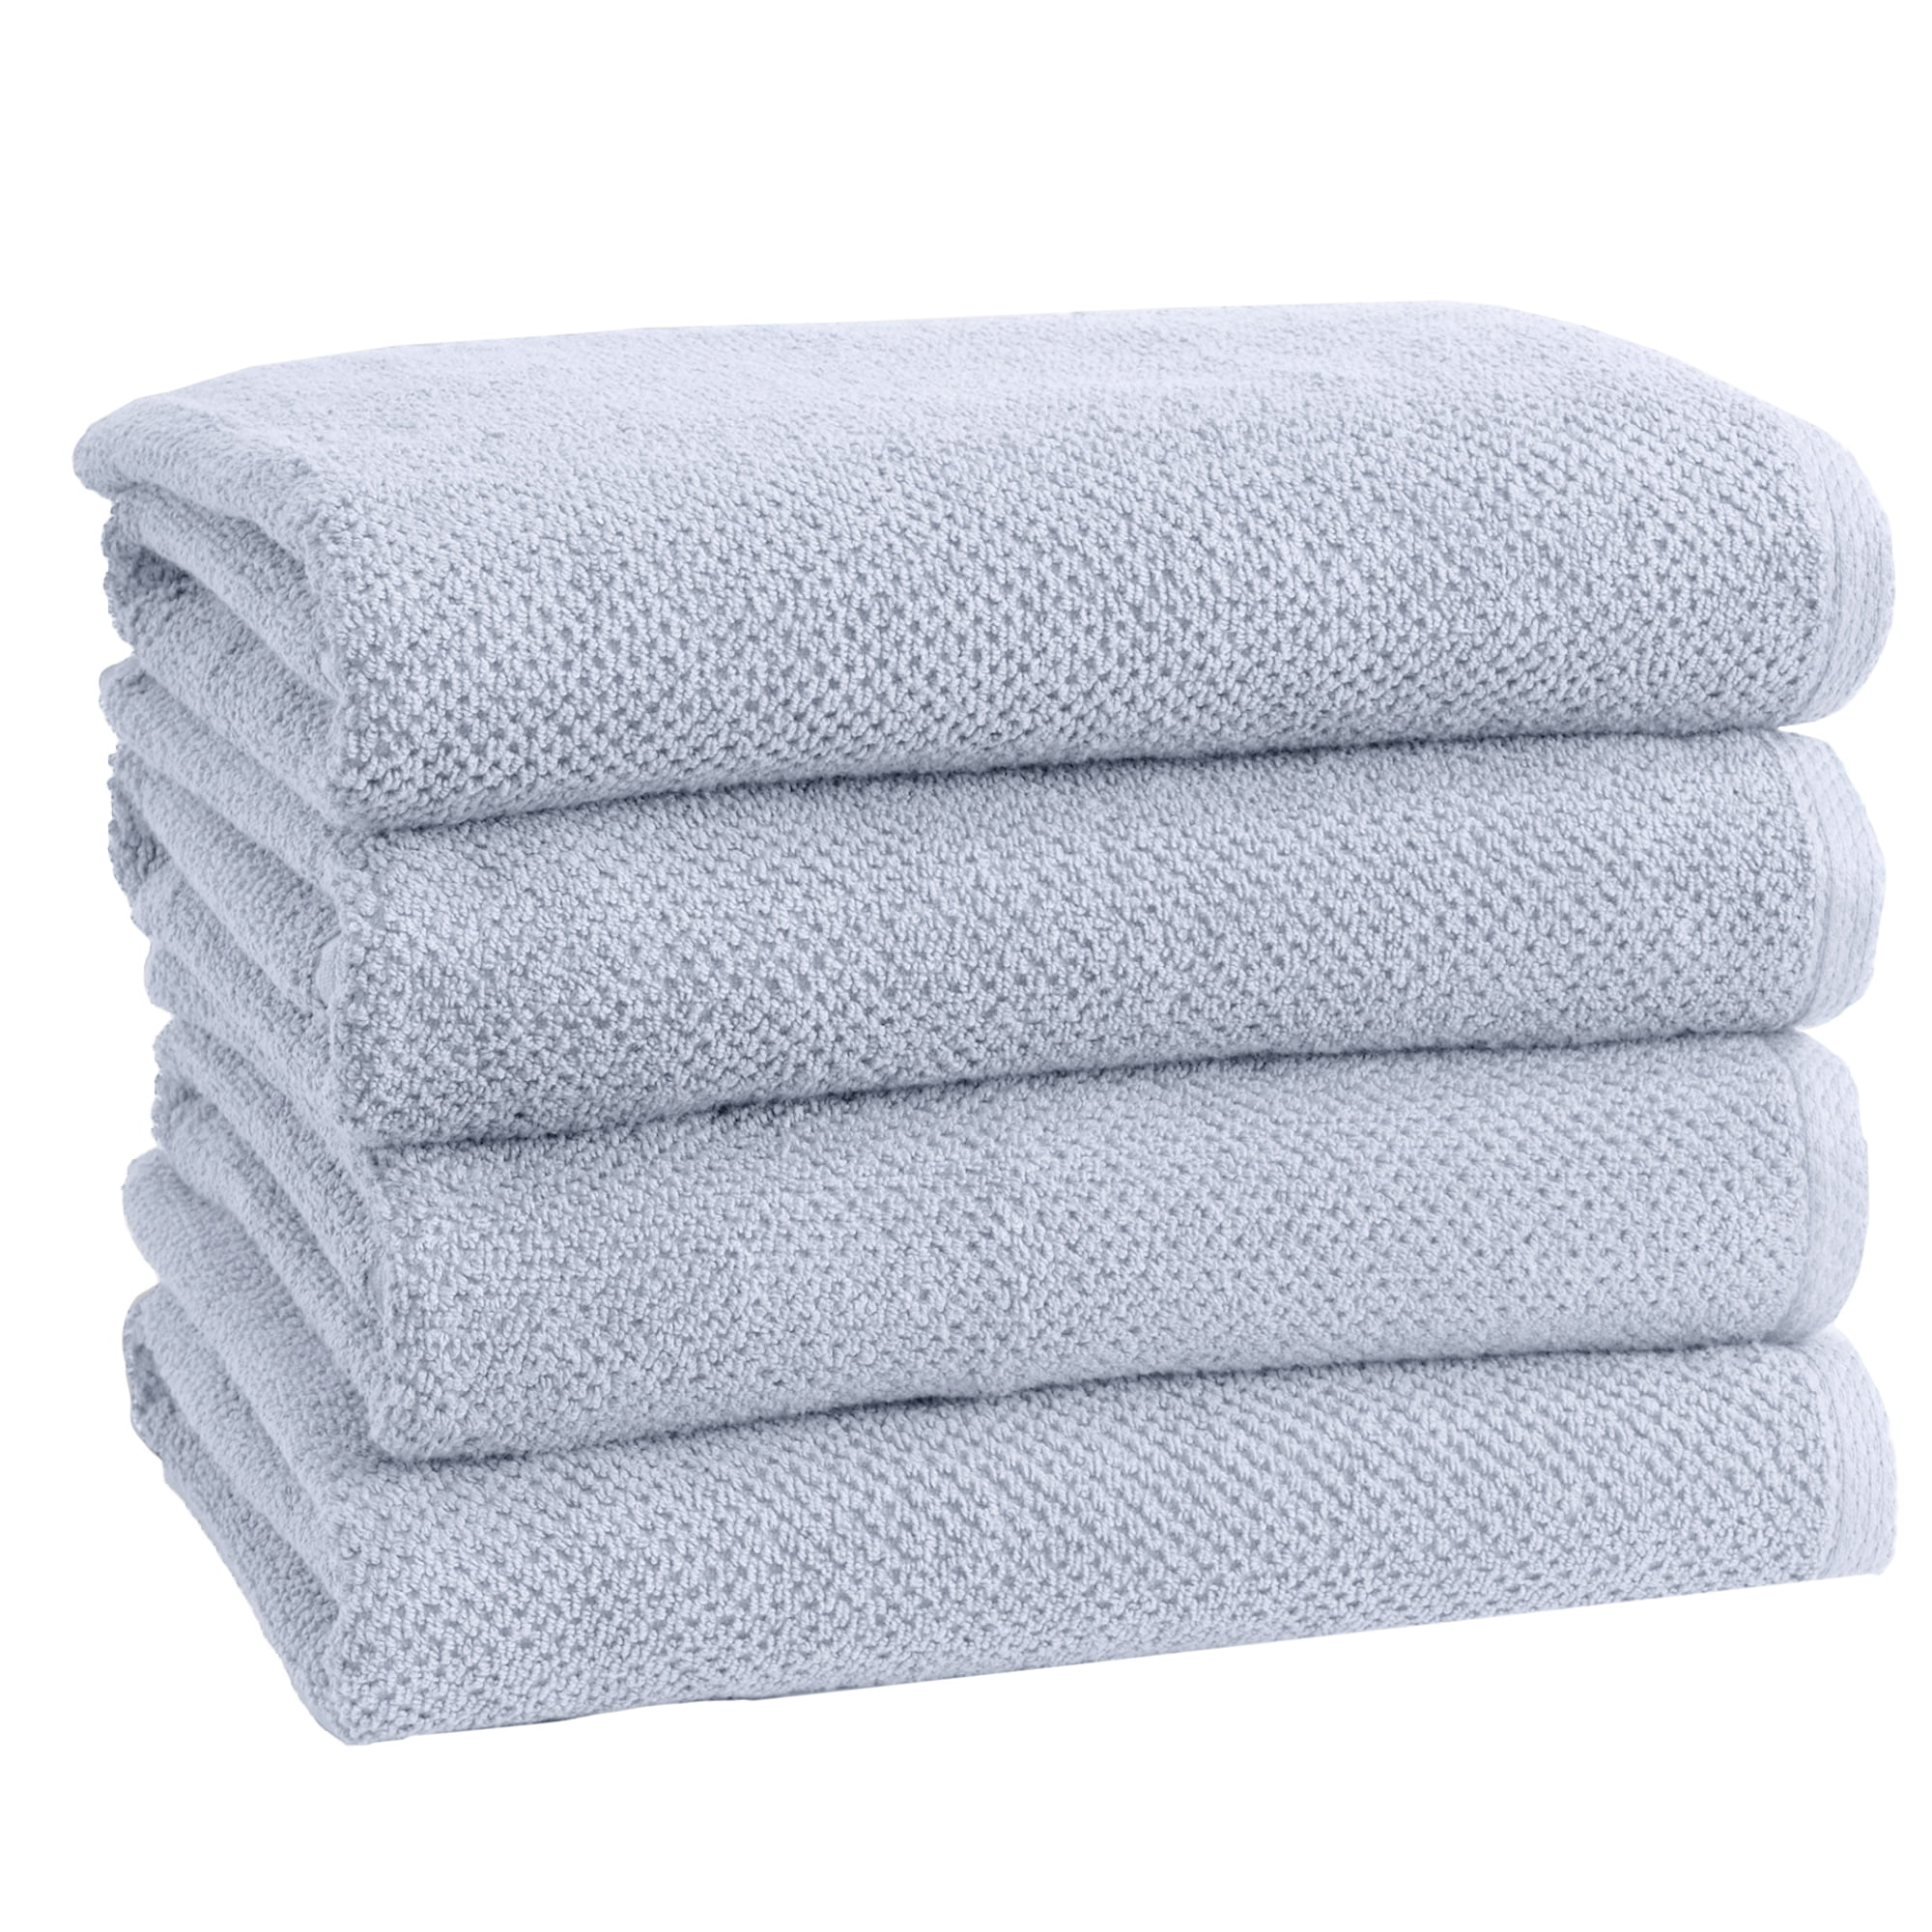 THE CLEAN STORE 6 Piece White Popcorn cotton Bath Towel Set (2